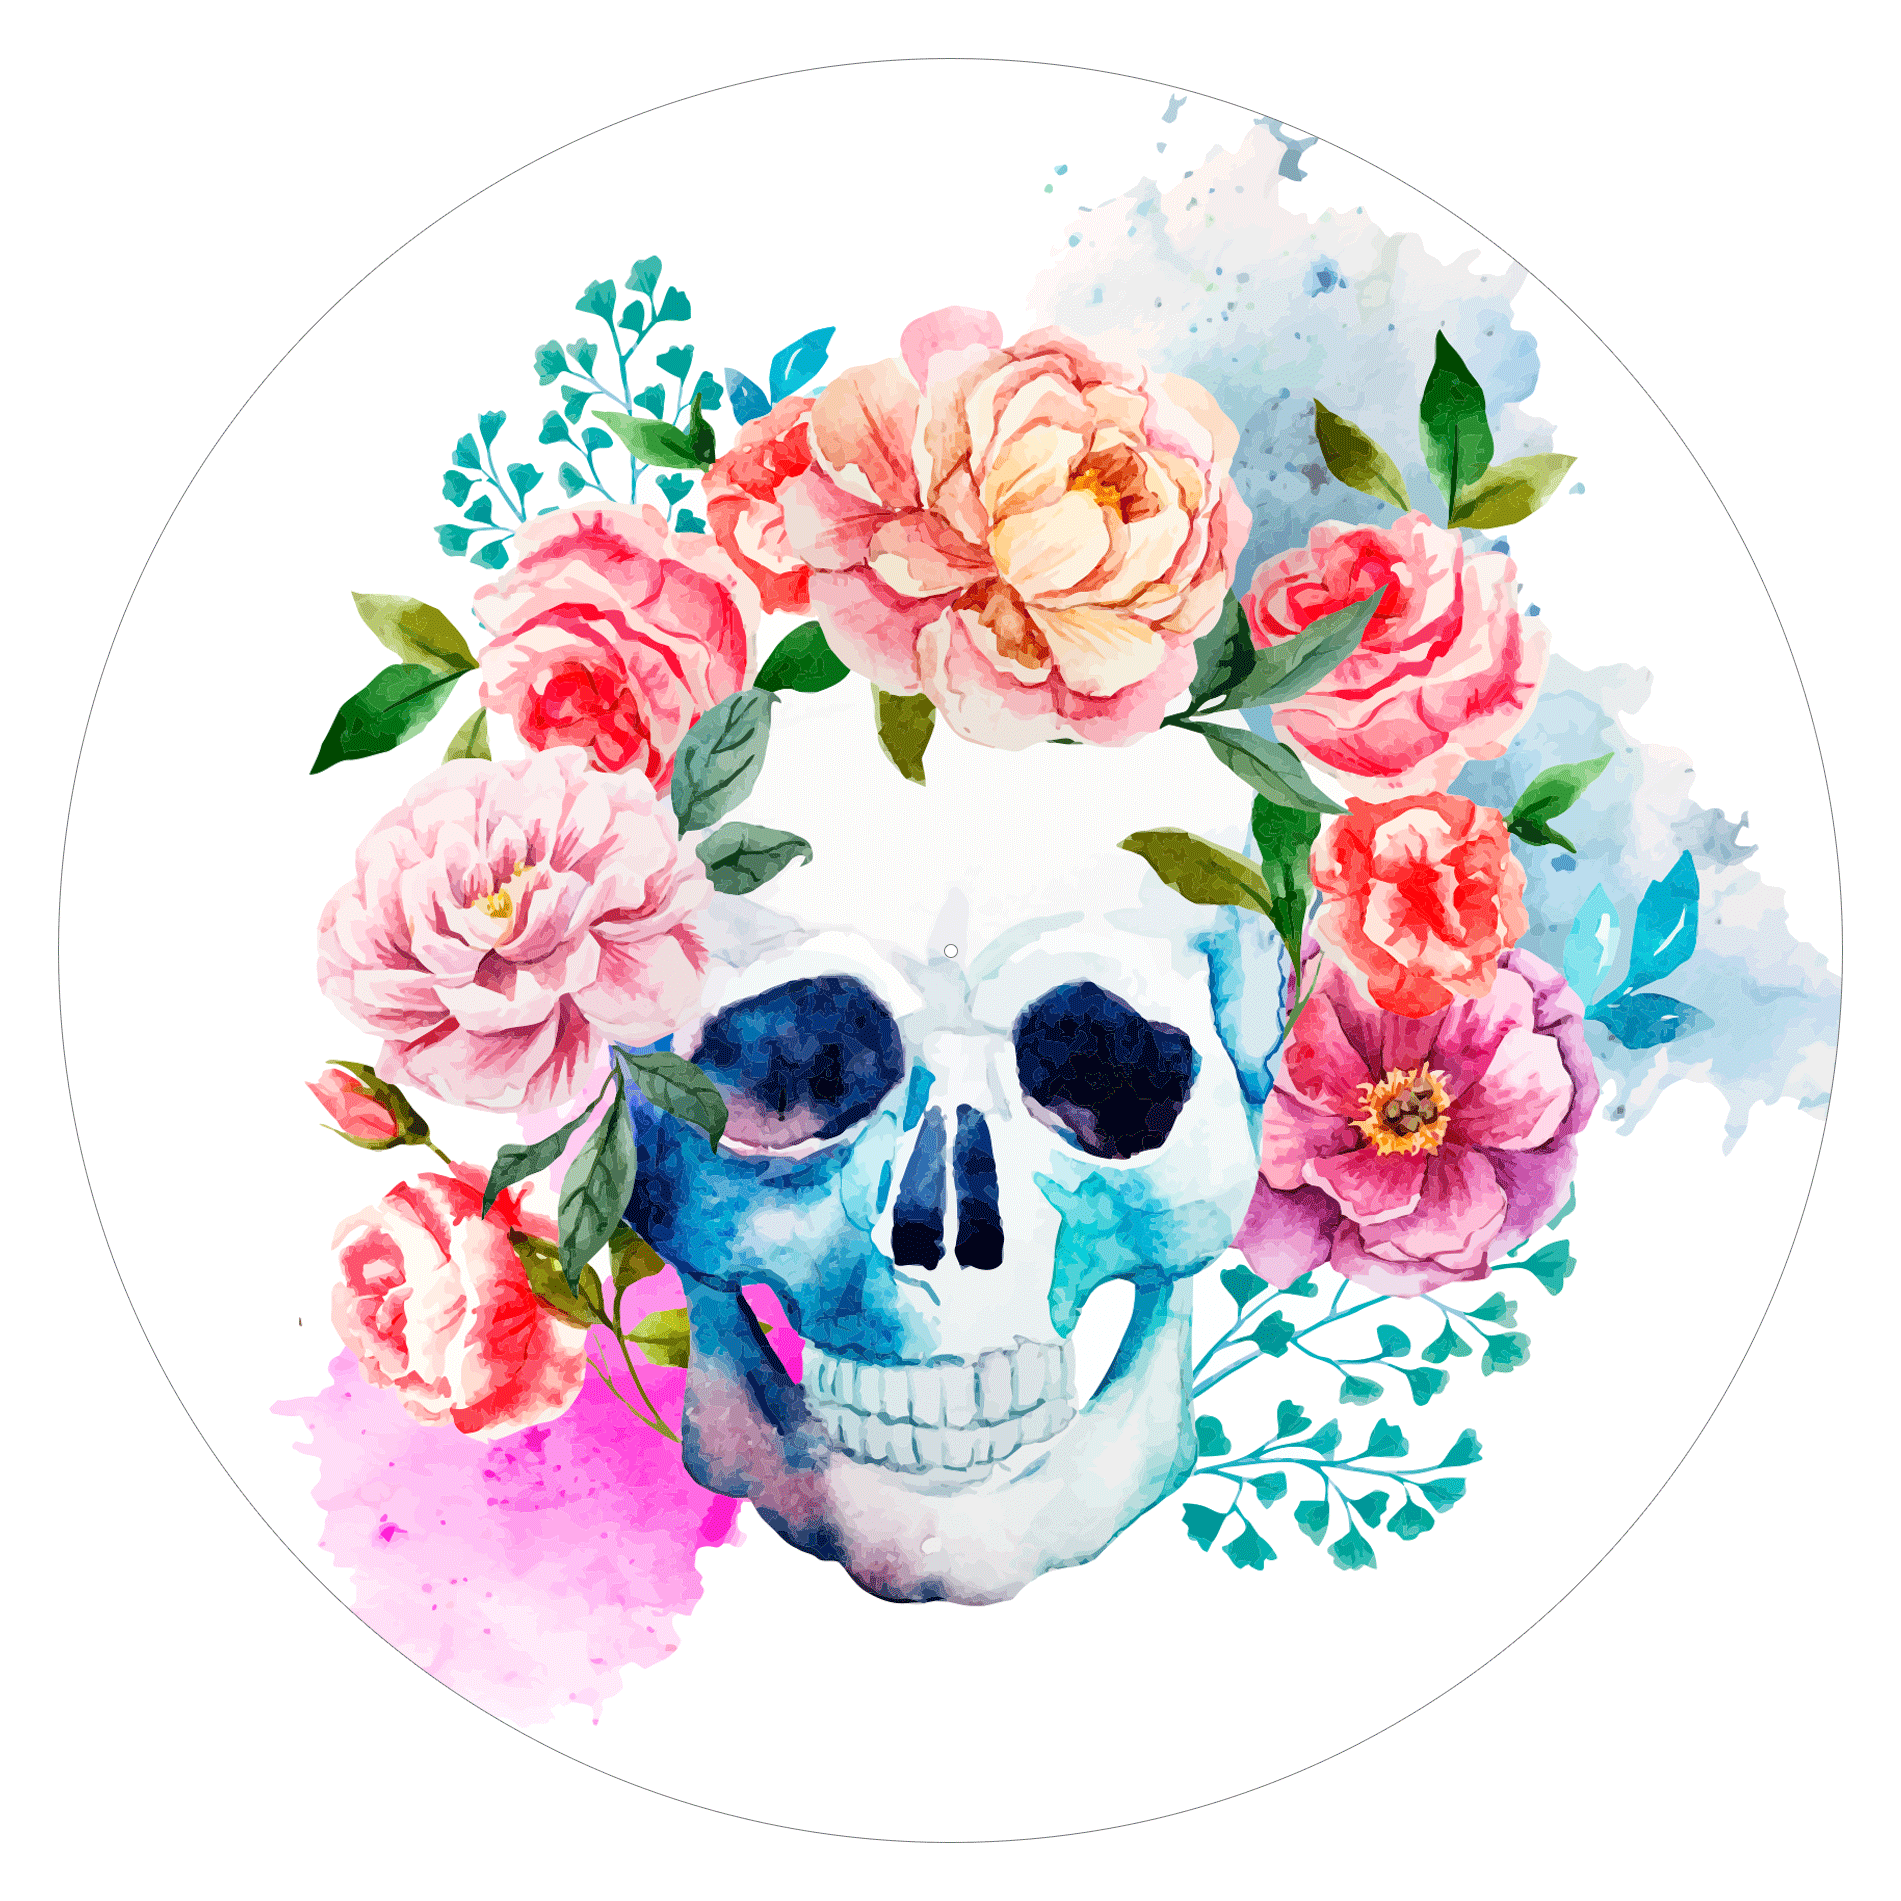 Skull'n'Roses - slipmat tappetino DJ 33 giri